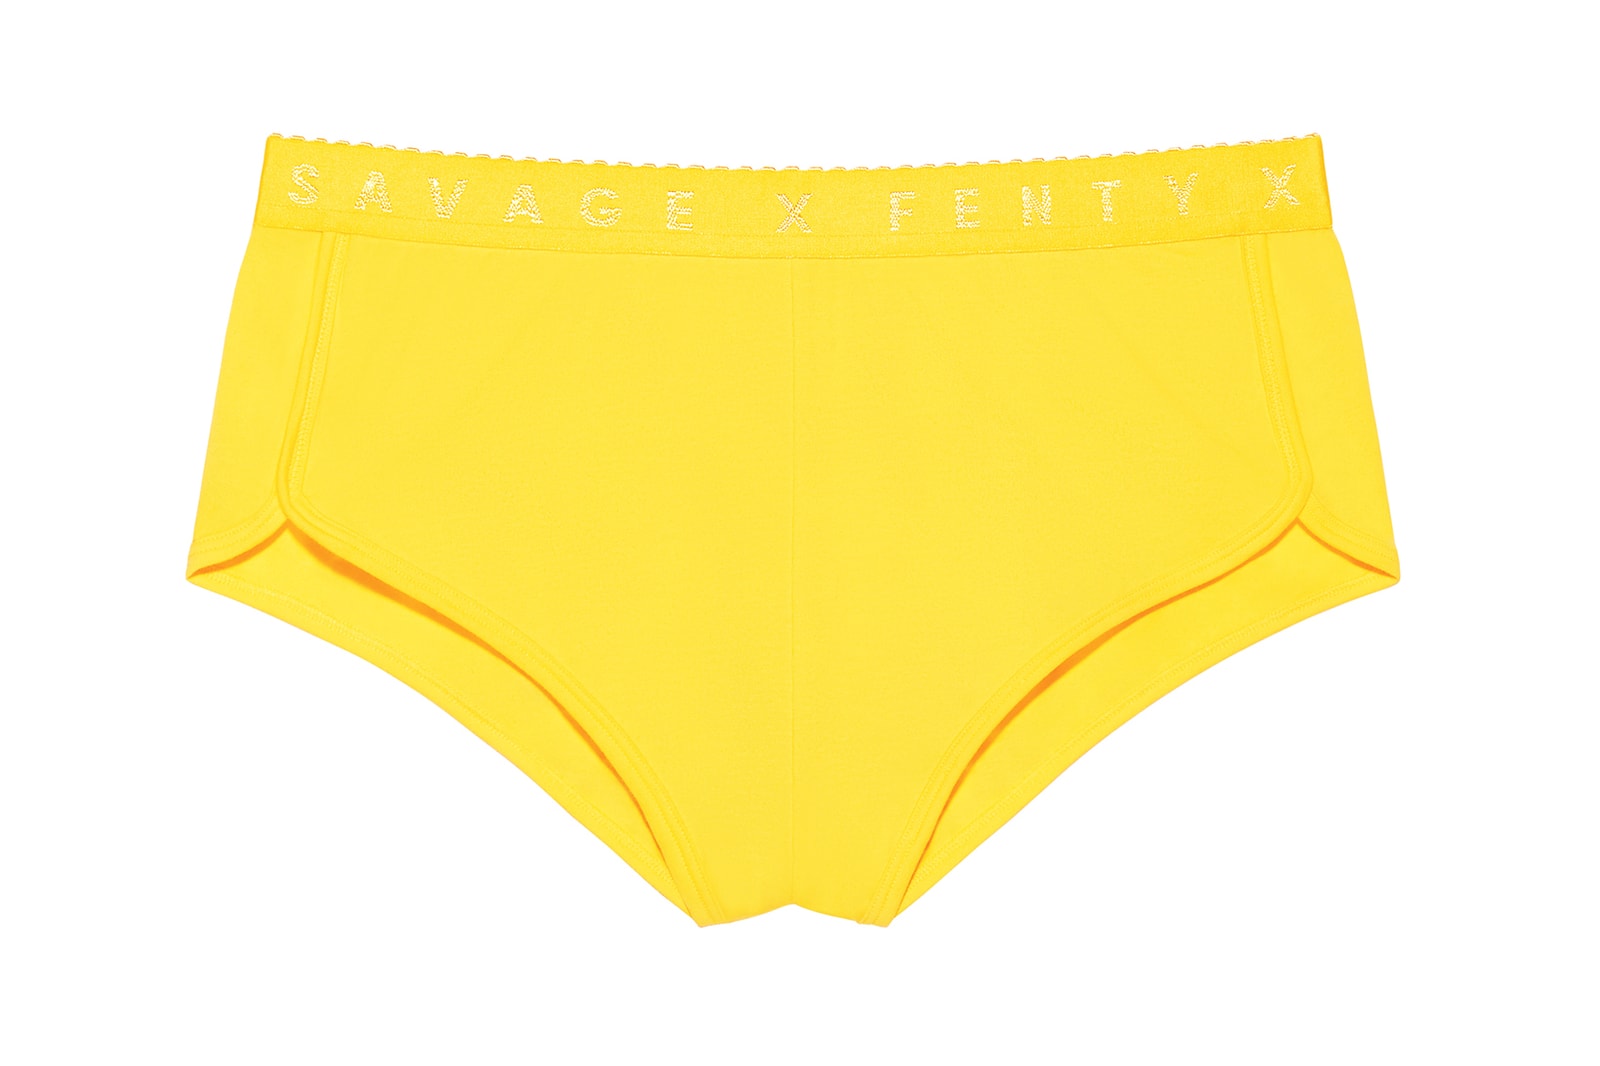 Rihanna Savage X Fenty Spring/Summer 2020 May Collection Bra Underwear